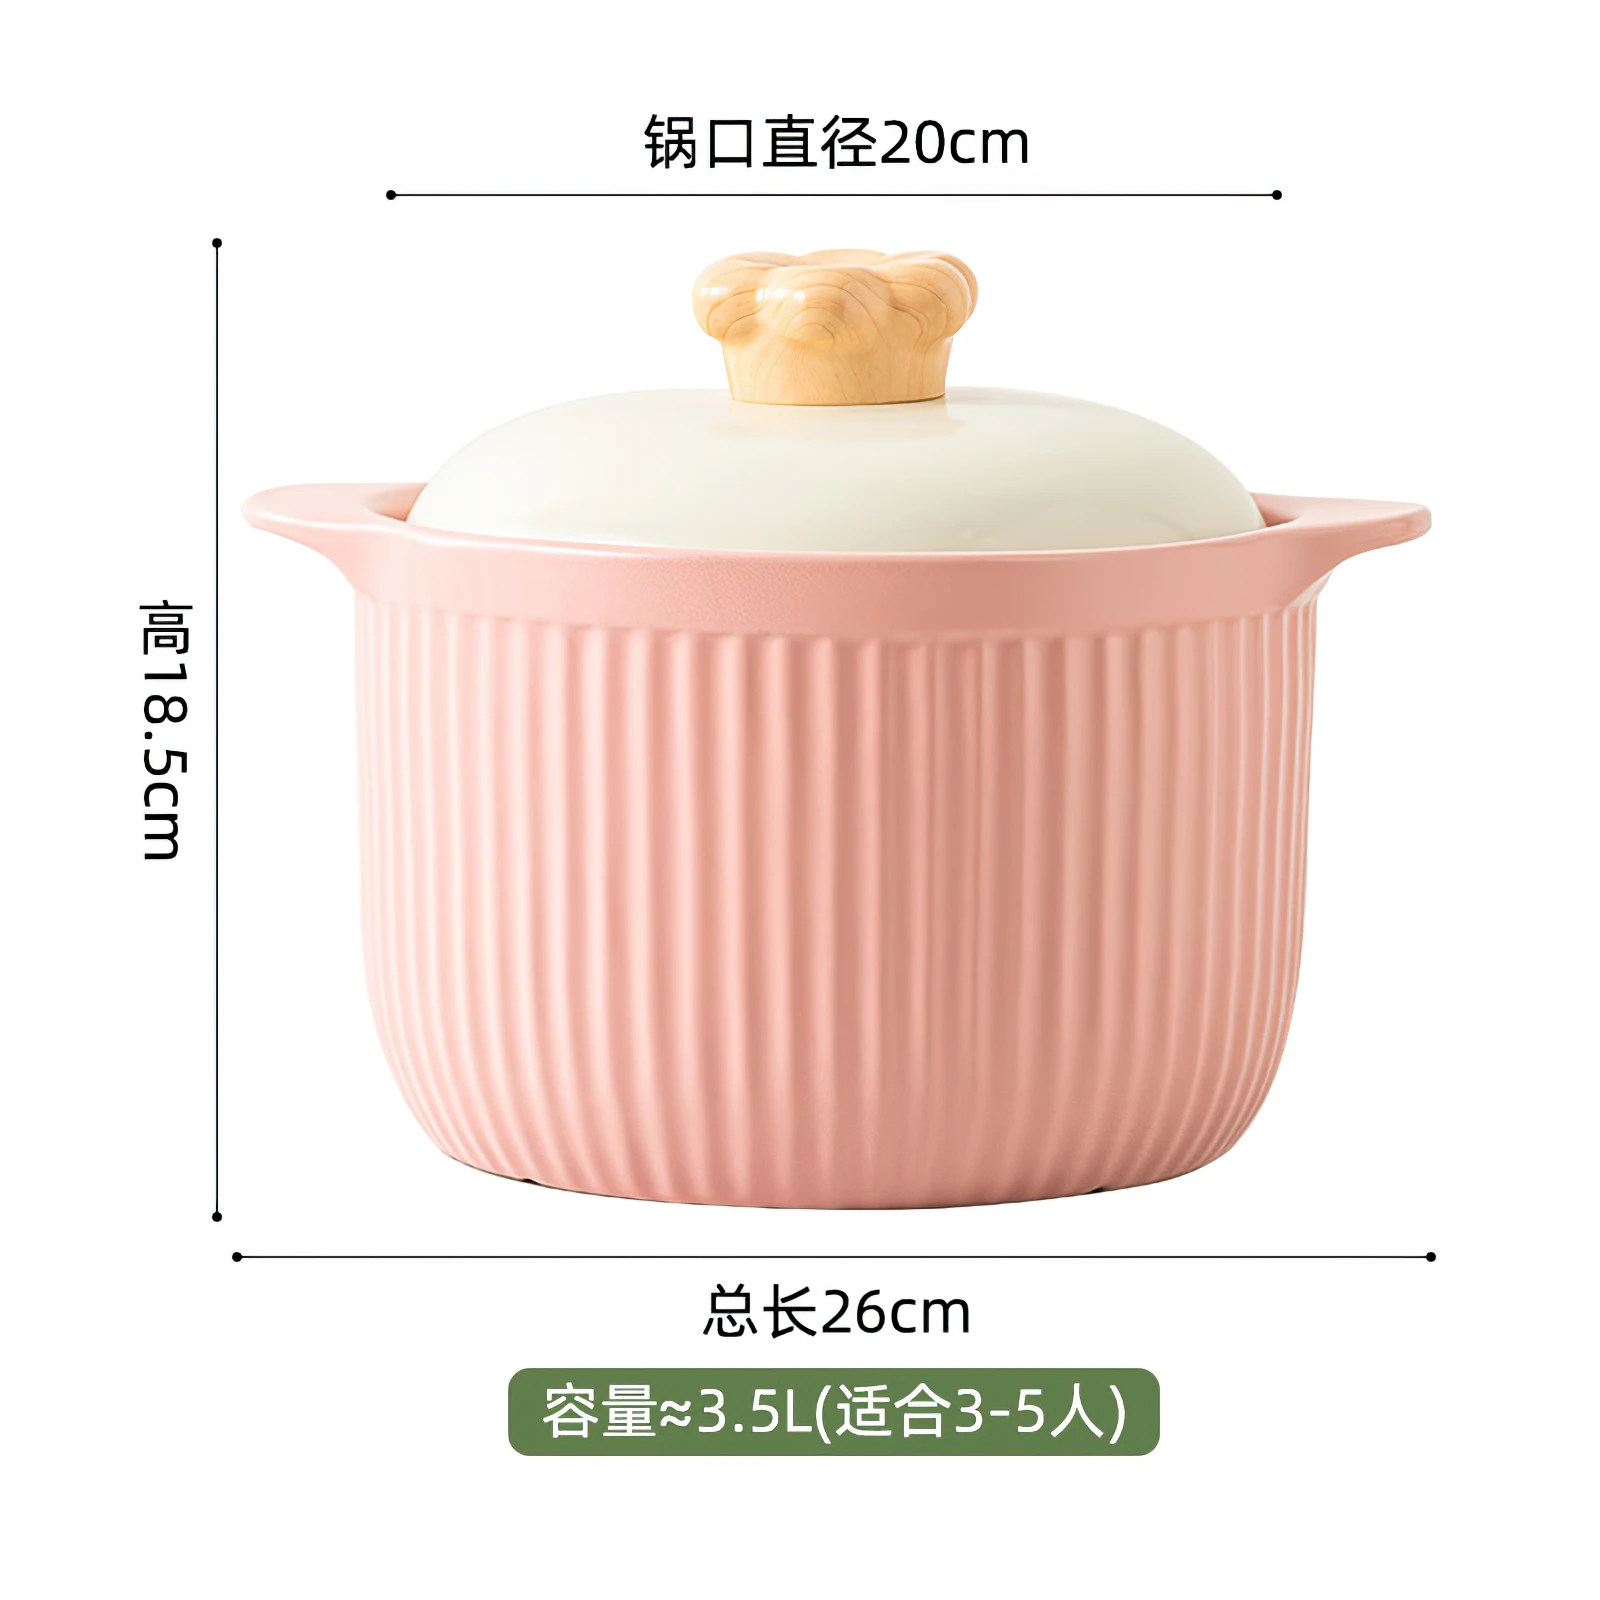 https://ae01.alicdn.com/kf/Scb6e38892fa04693ae77771fbcbf877az/2-5L-Ceramic-Casserole-Nordic-Macaron-3-5L-Soup-Pot-Kitchenware-Big-Cooking-Pots-Saucepan-Cookware.jpg